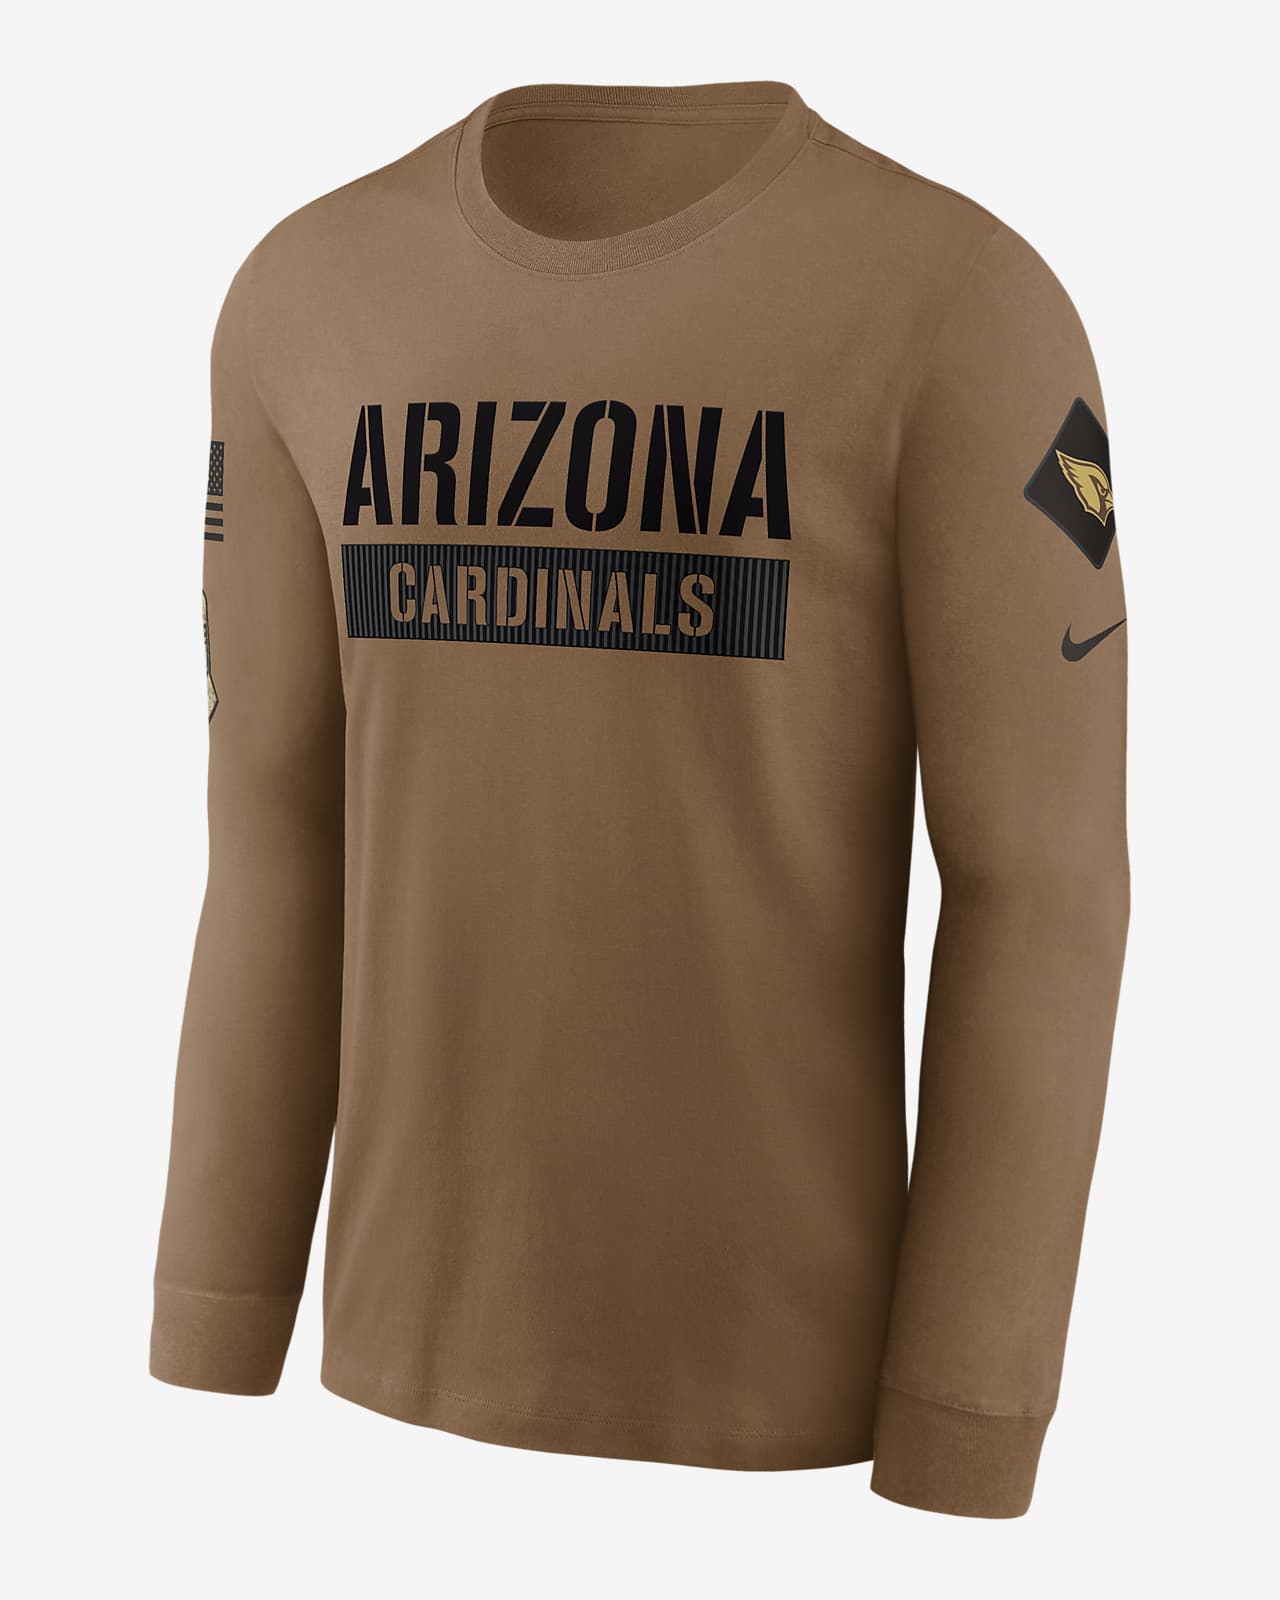 Arizona Cardinals Shop, Arizona Cardinals Apparel, Gifts, Gear